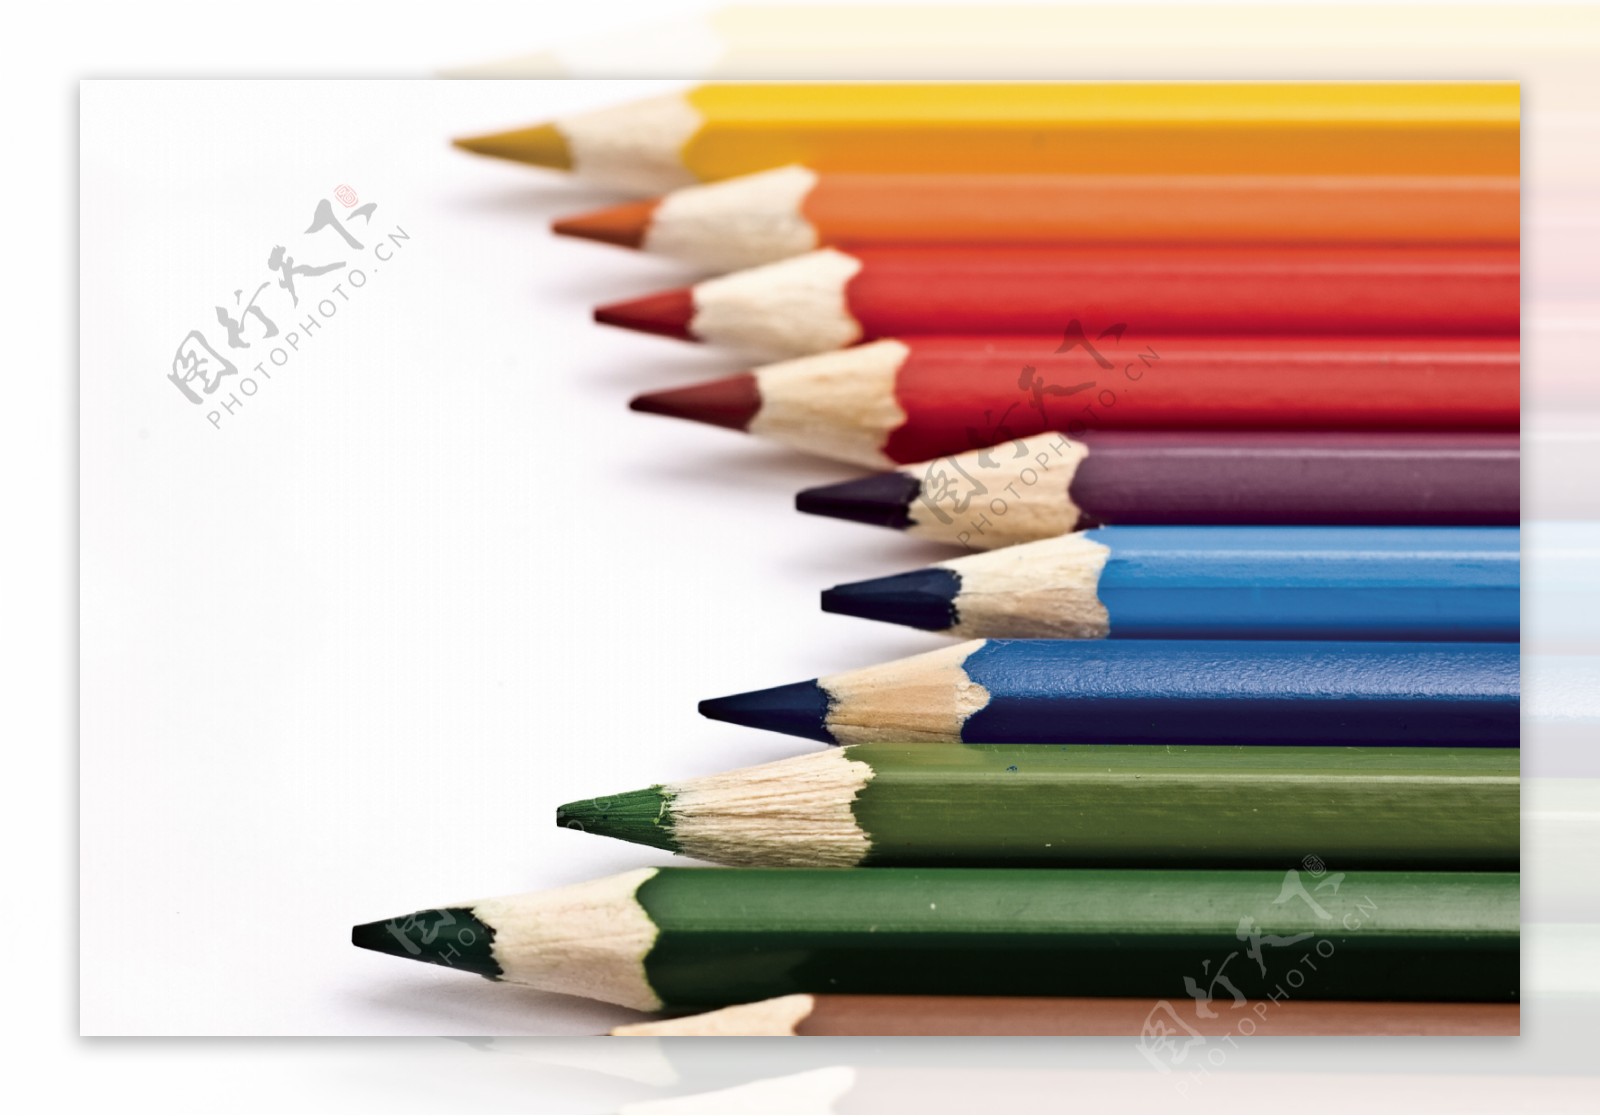 彩色铅笔素材